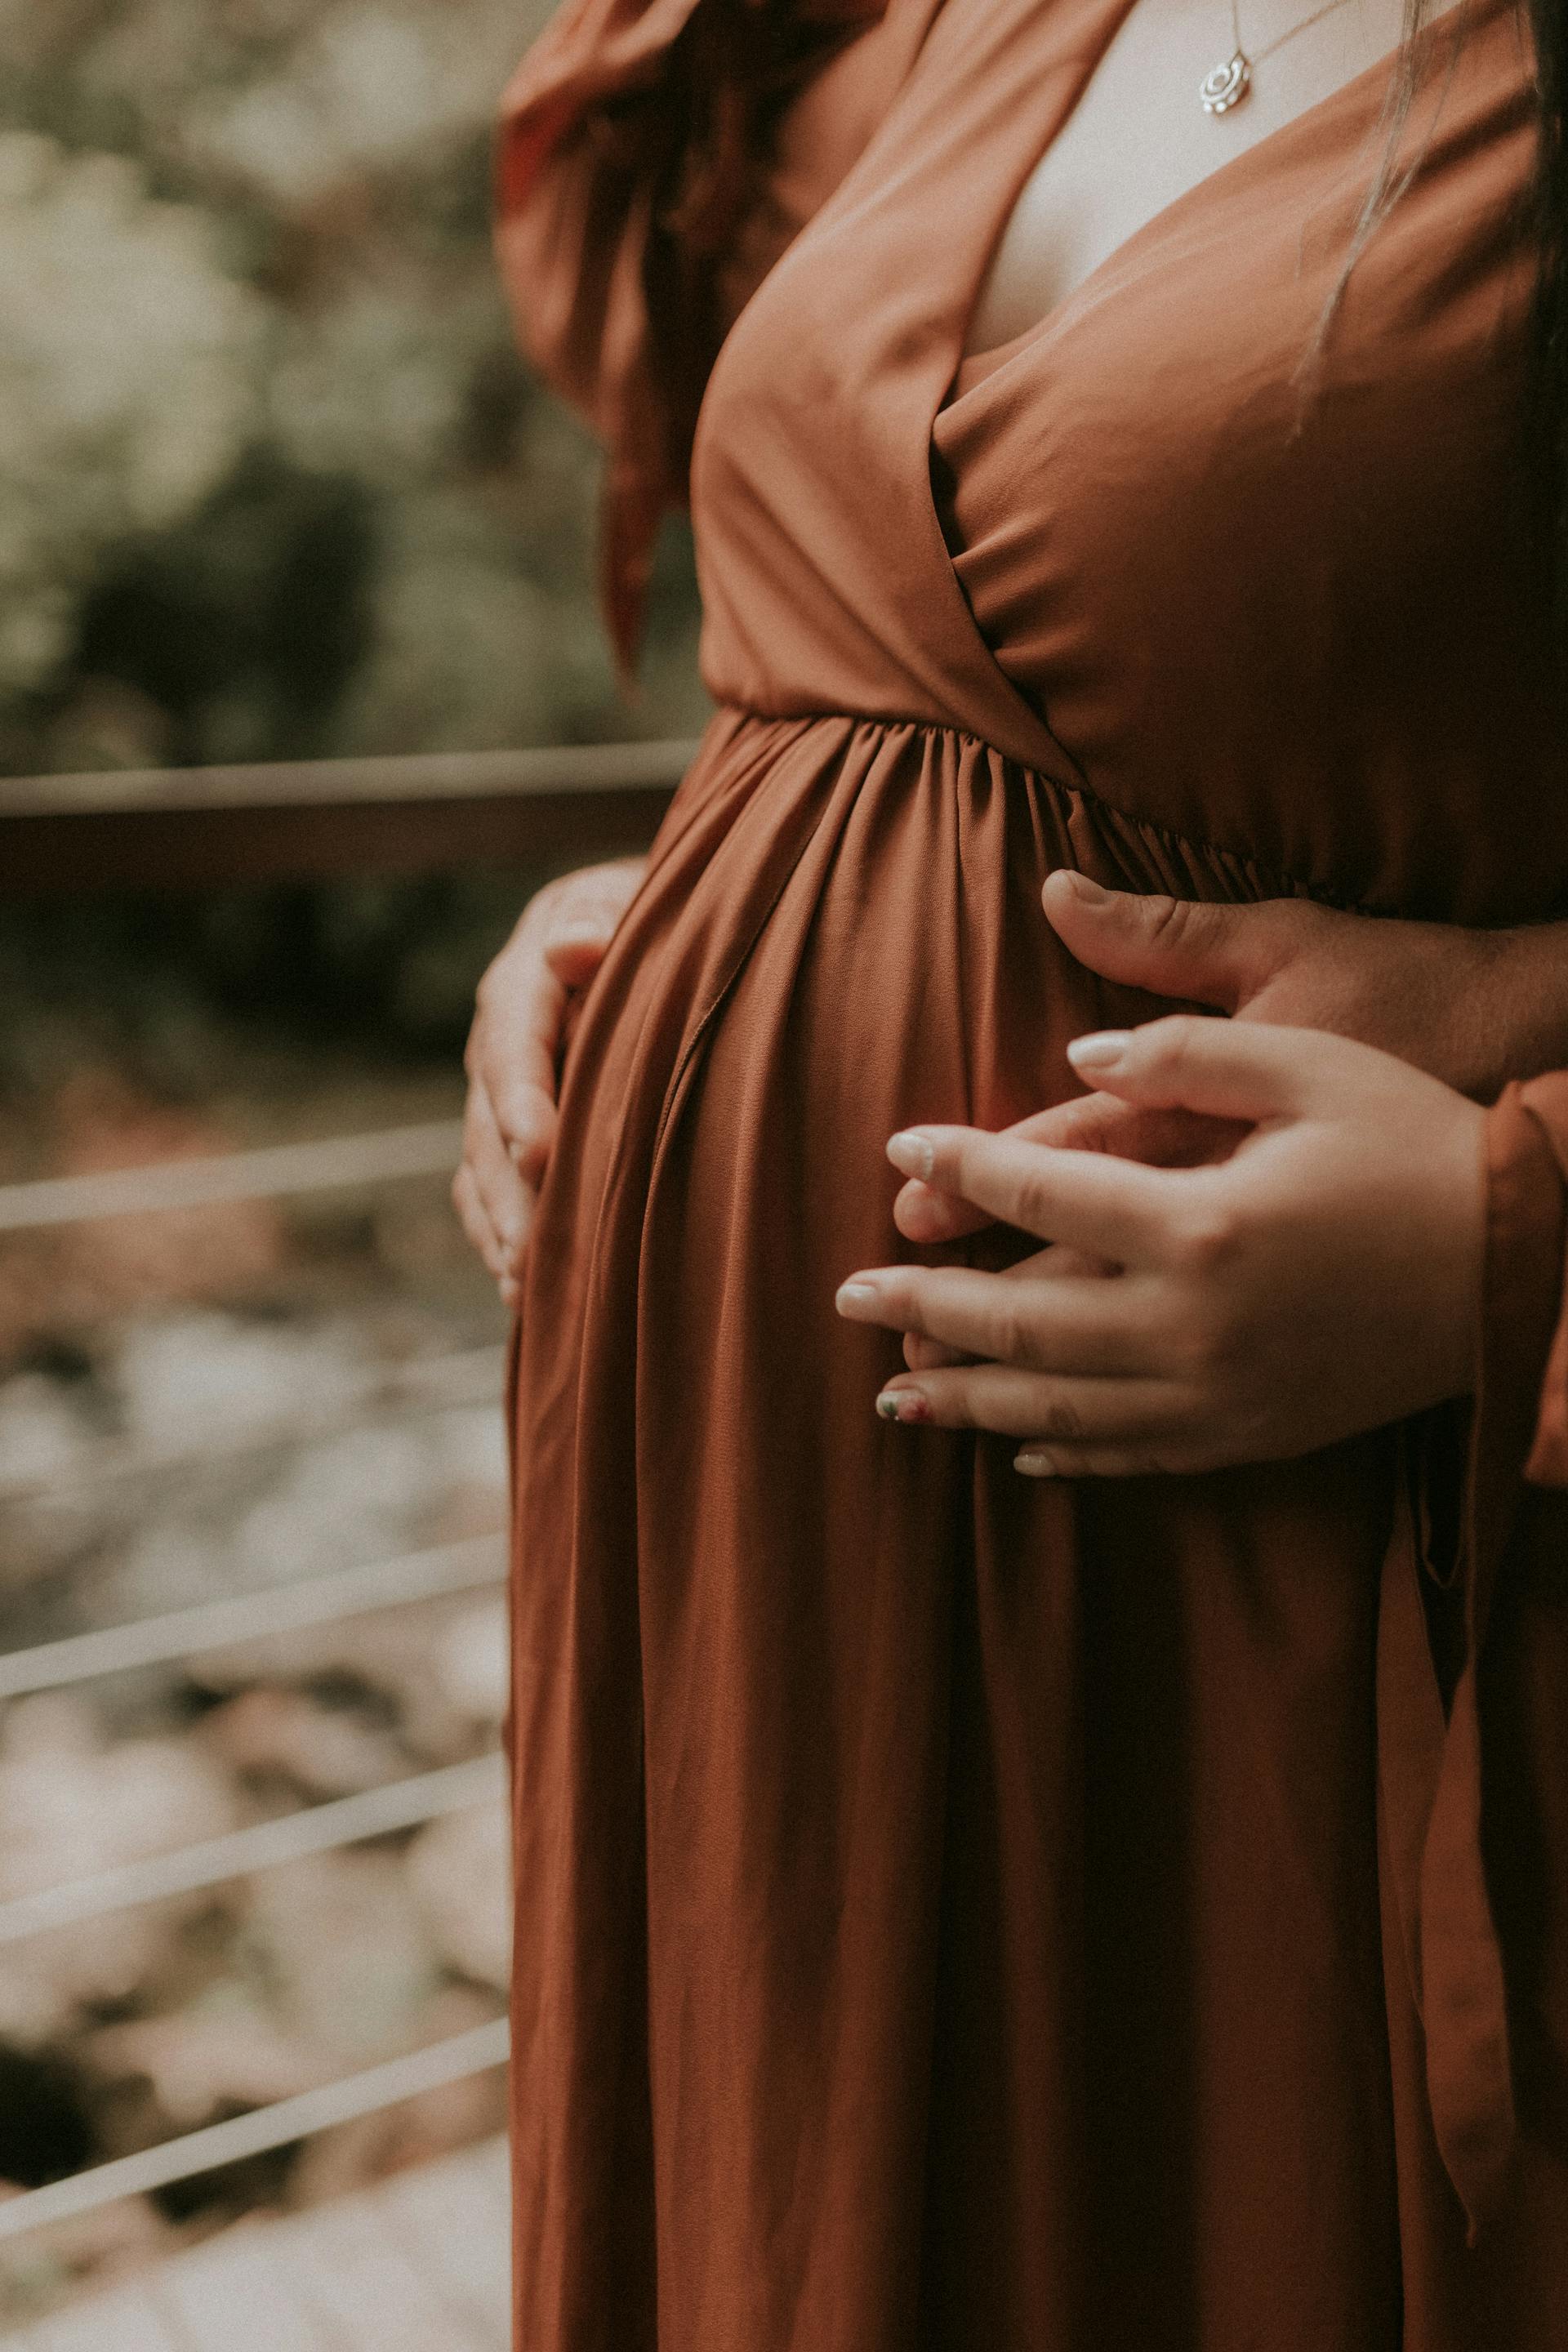 Un couple se tenant par la main tout en touchant le baby bump de la femme enceinte | Source : Pexels